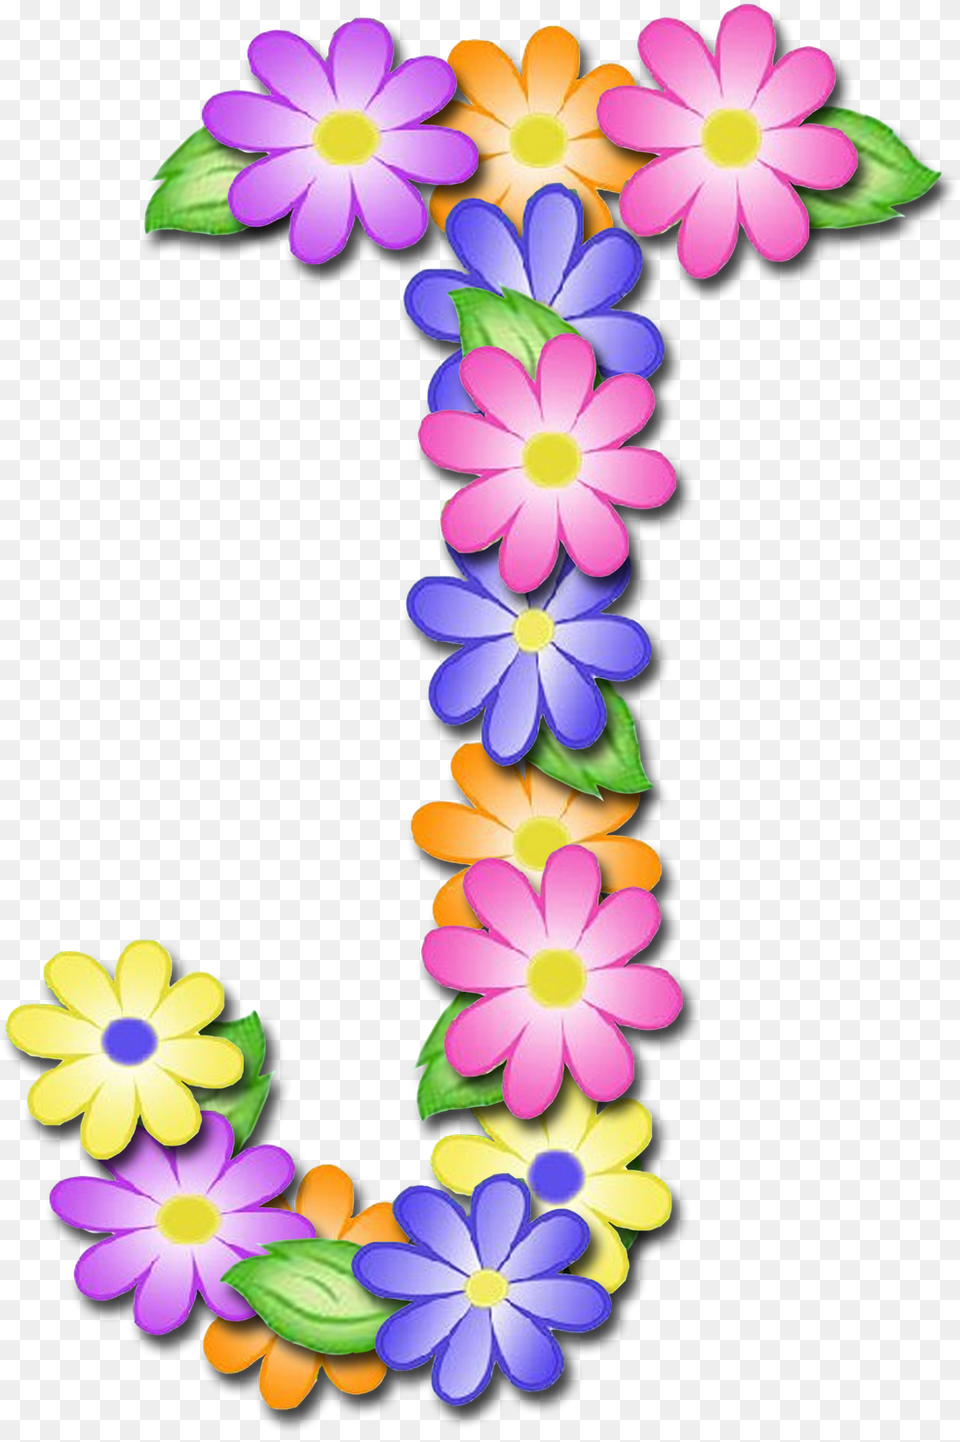 Alfabeto De Primavera Letras Em Muito Lindo Letras Alfabeto De Primavera Letra T, Accessories, Flower, Flower Arrangement, Ornament Free Png